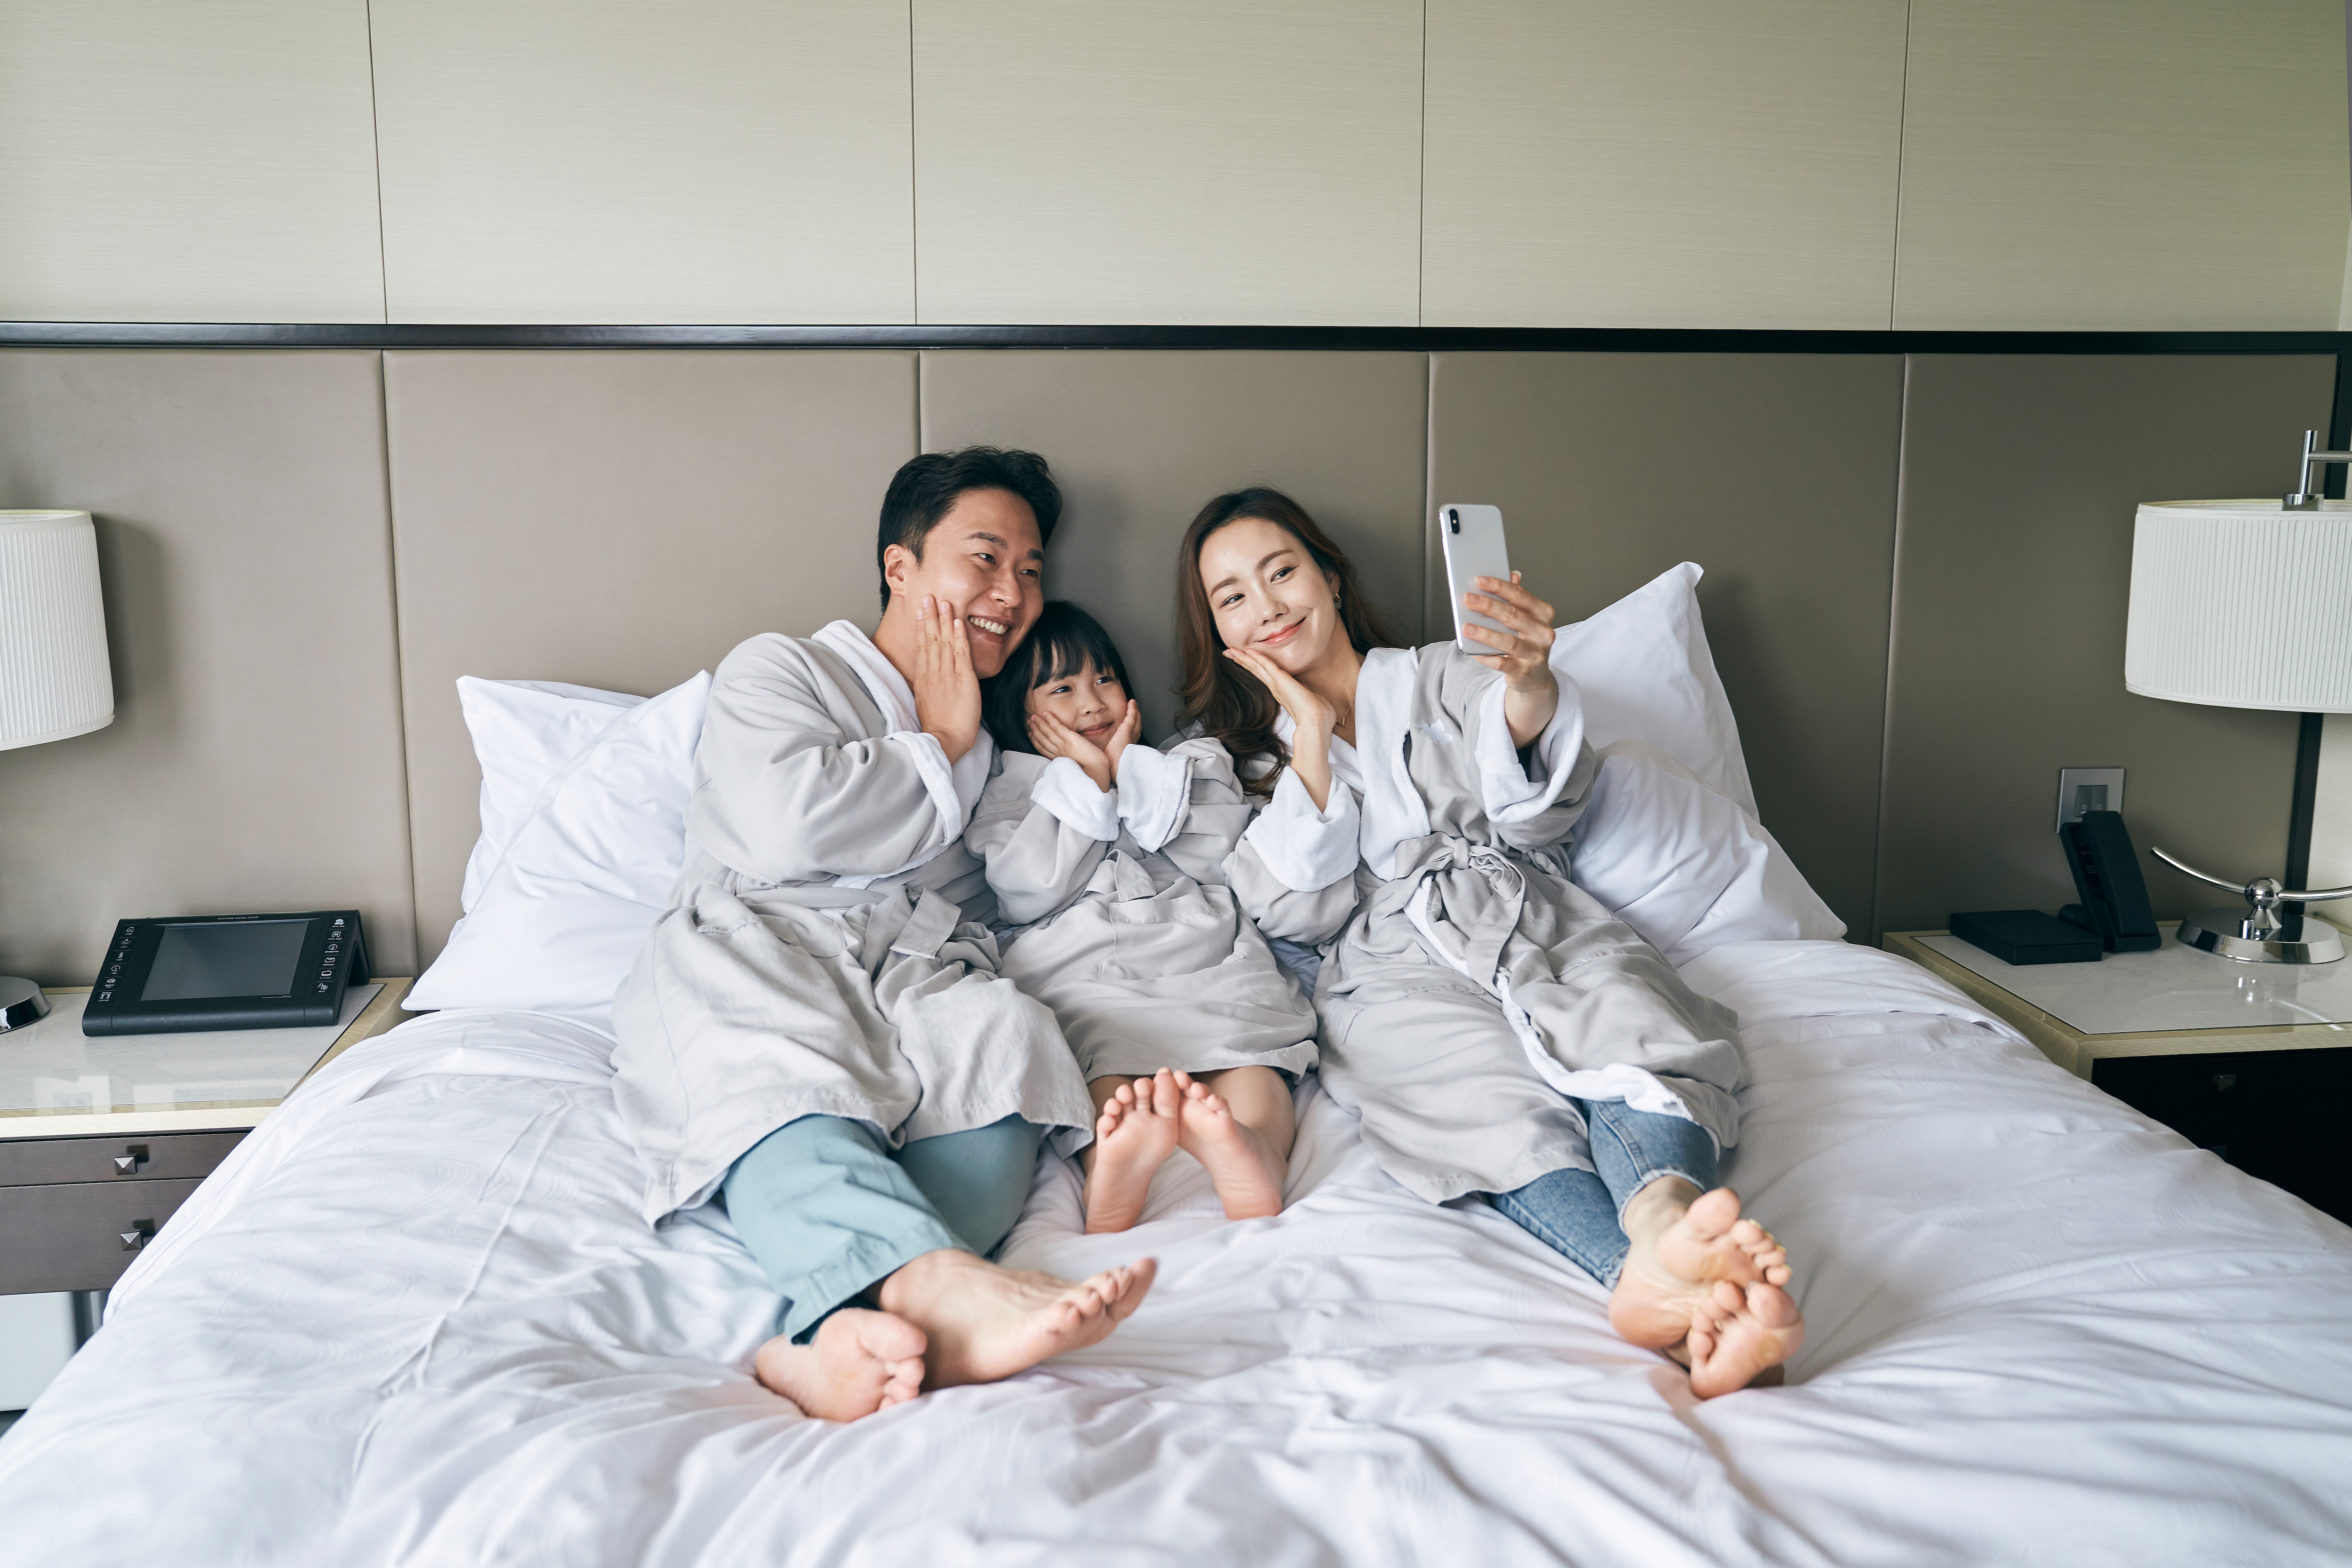 객실 침대에서 사진을 찍고 있는 가족